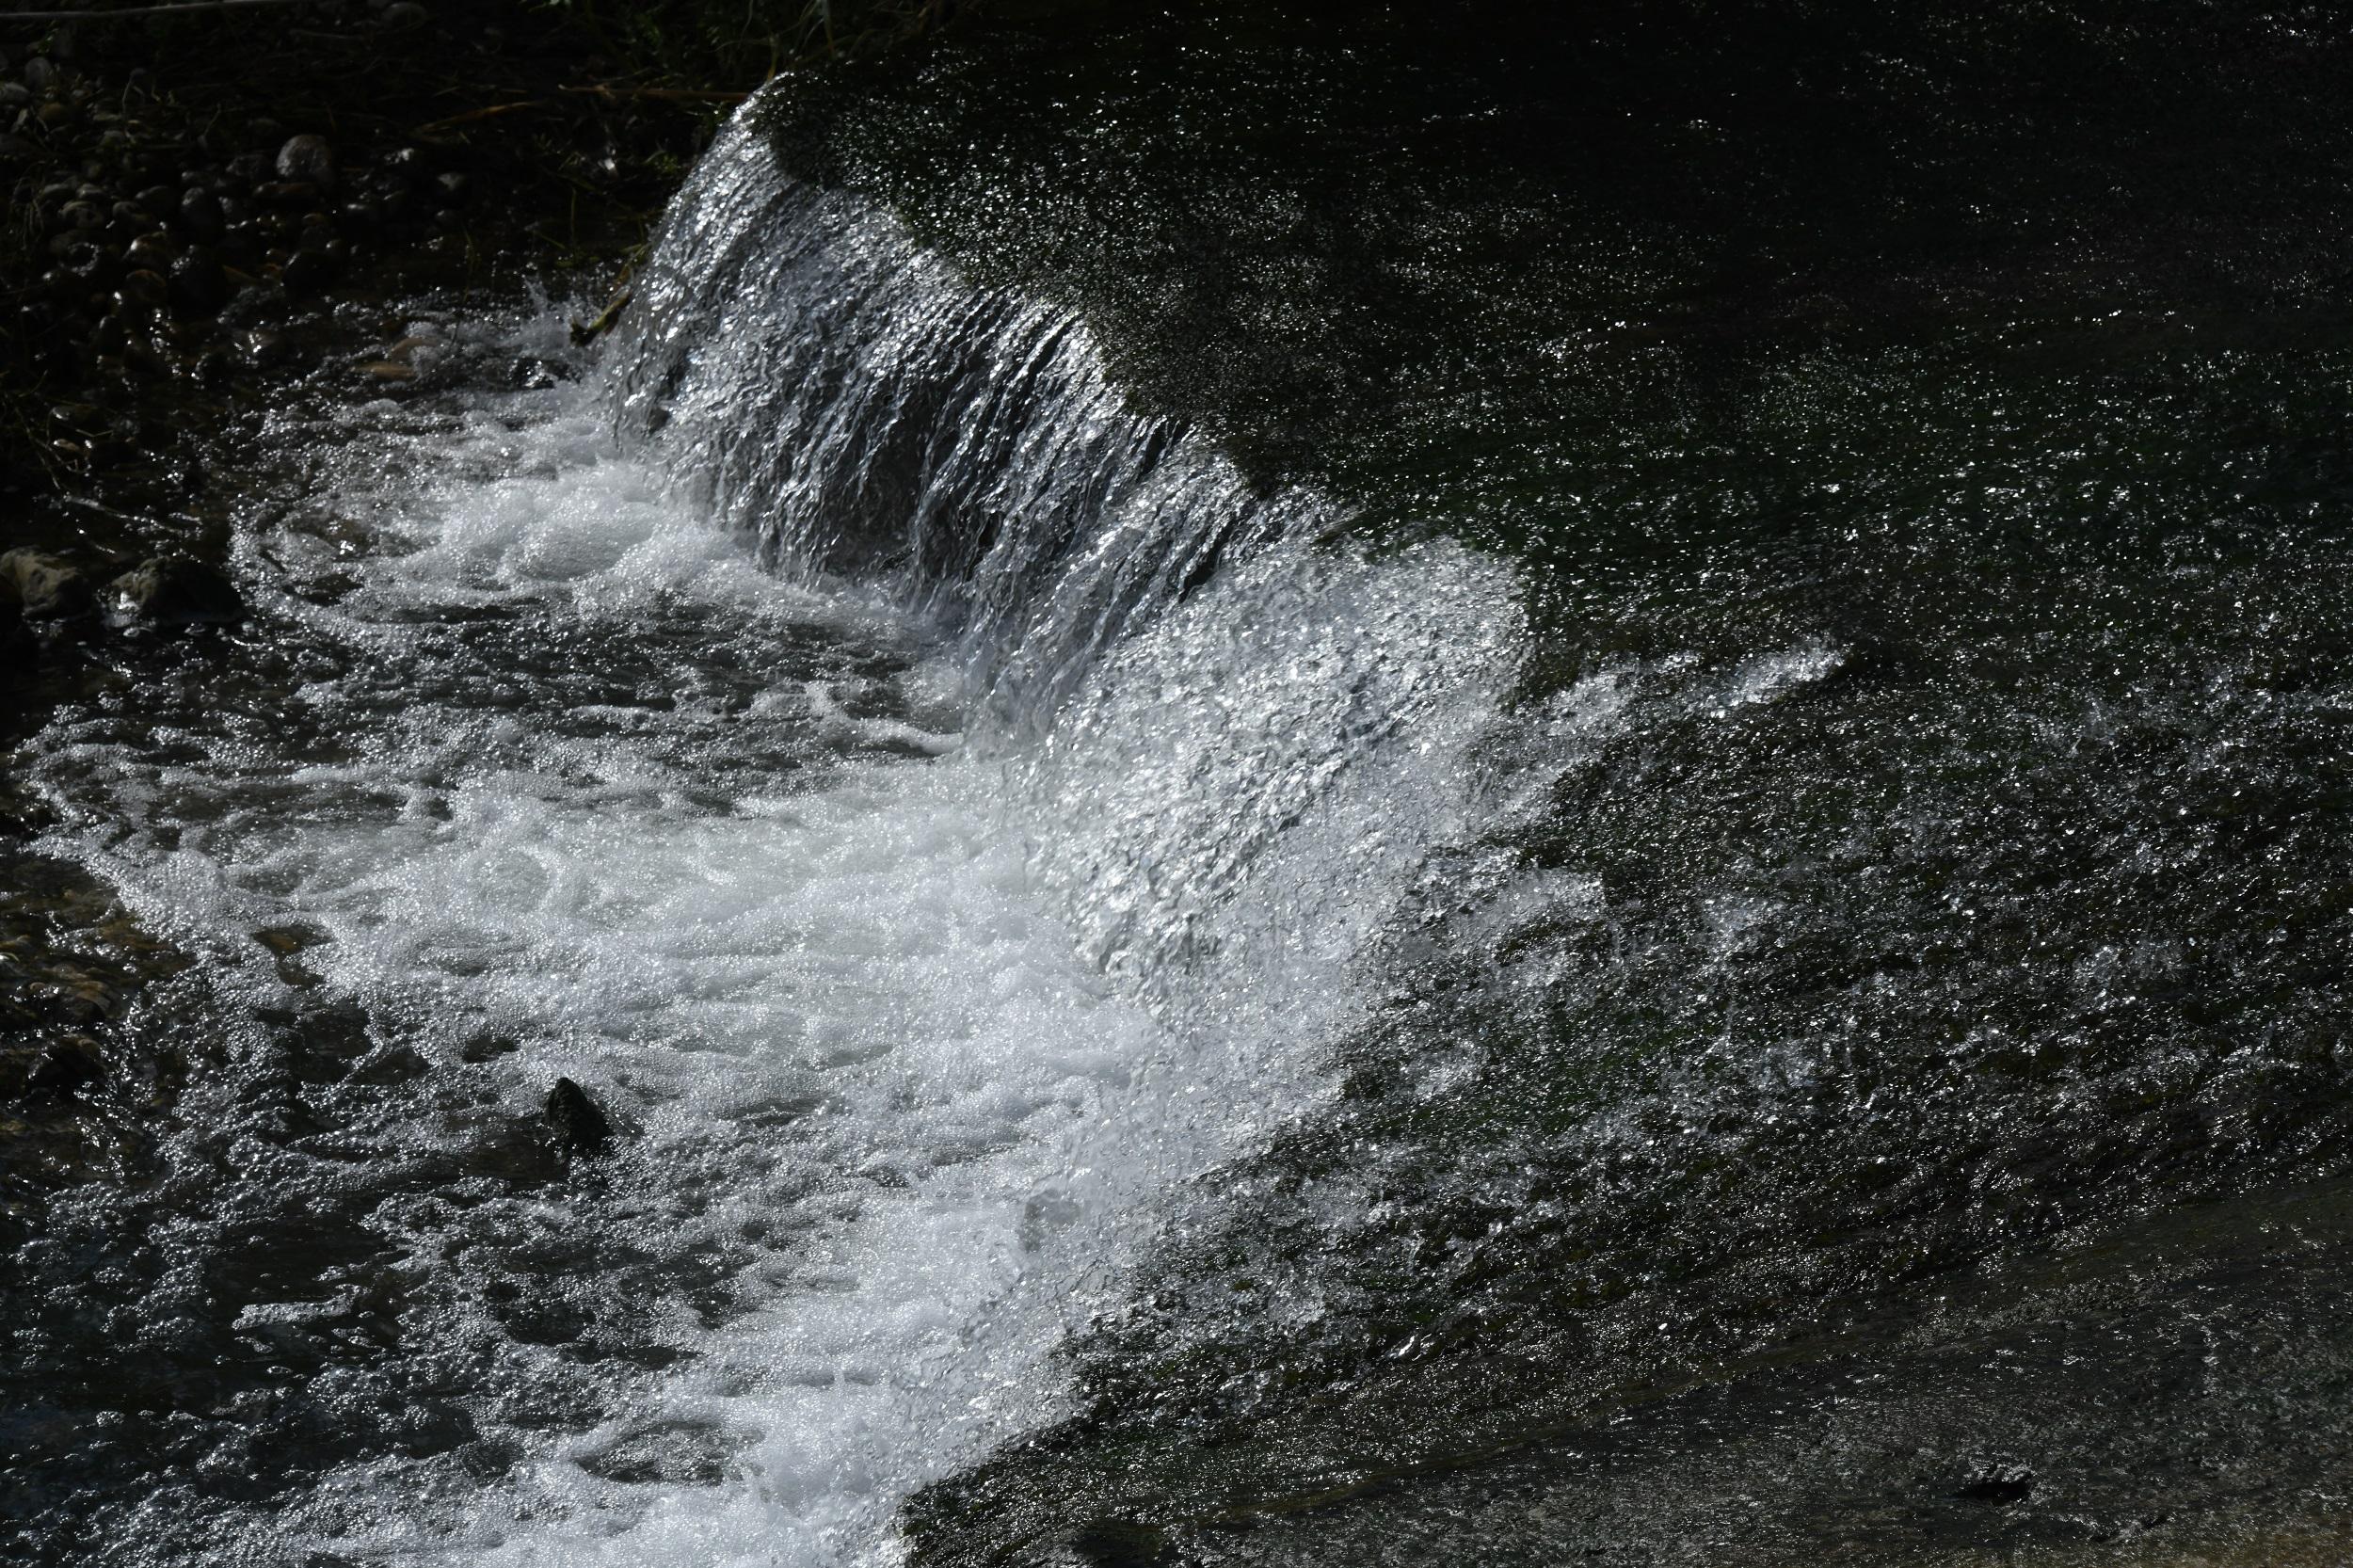 Rio Algar watervallen